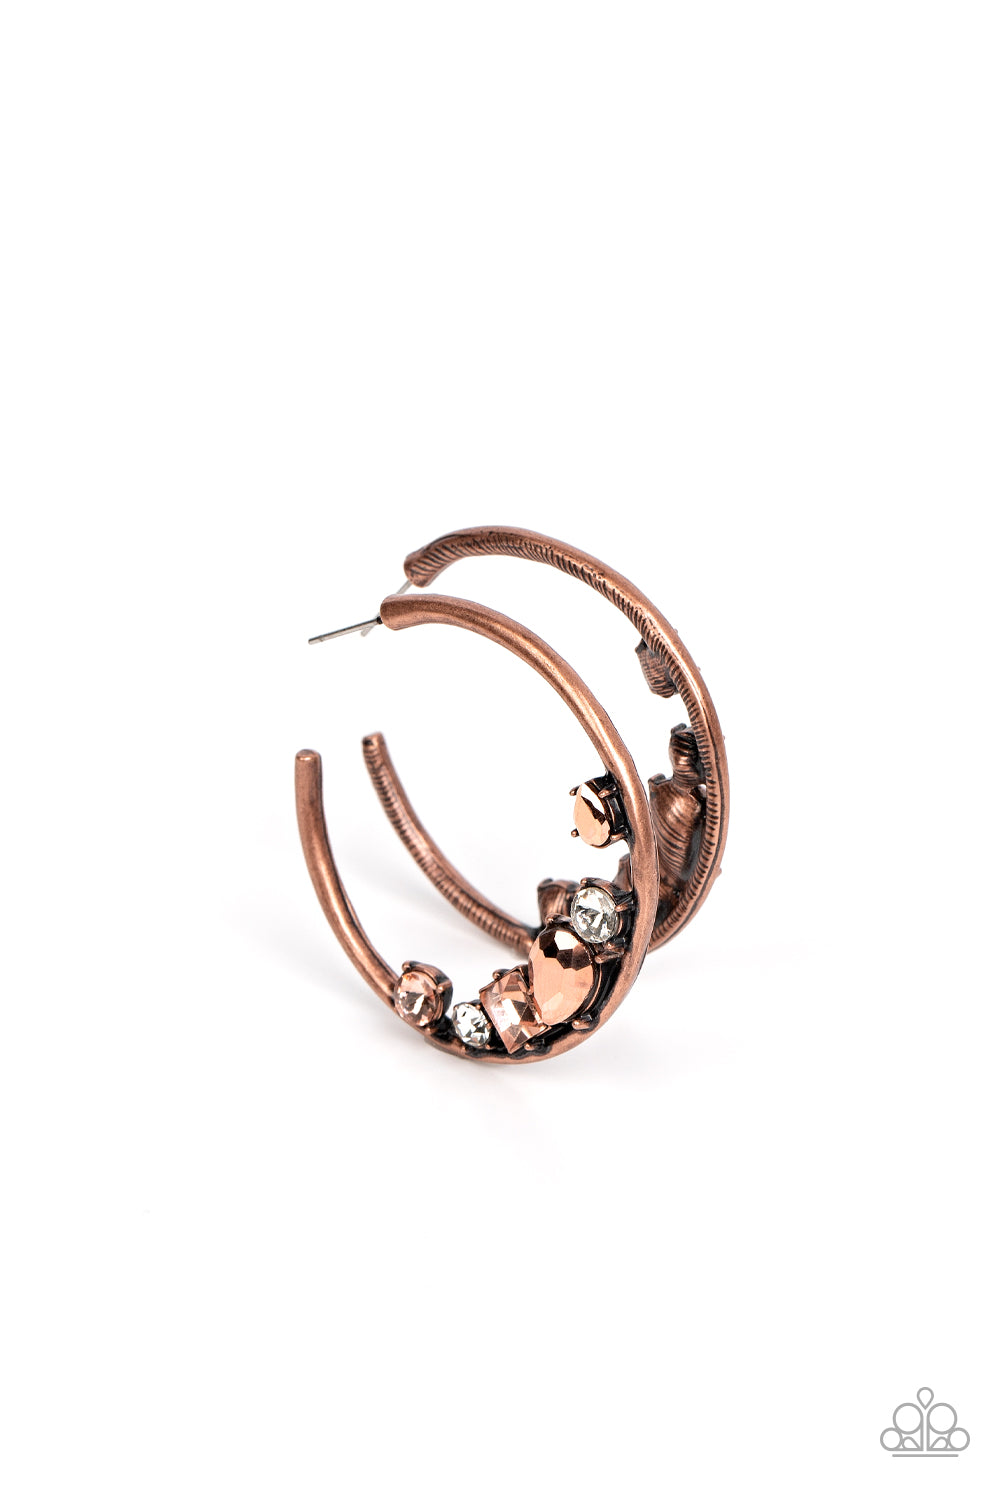 Attractive Allure - Copper - VJ Bedazzled Jewelry